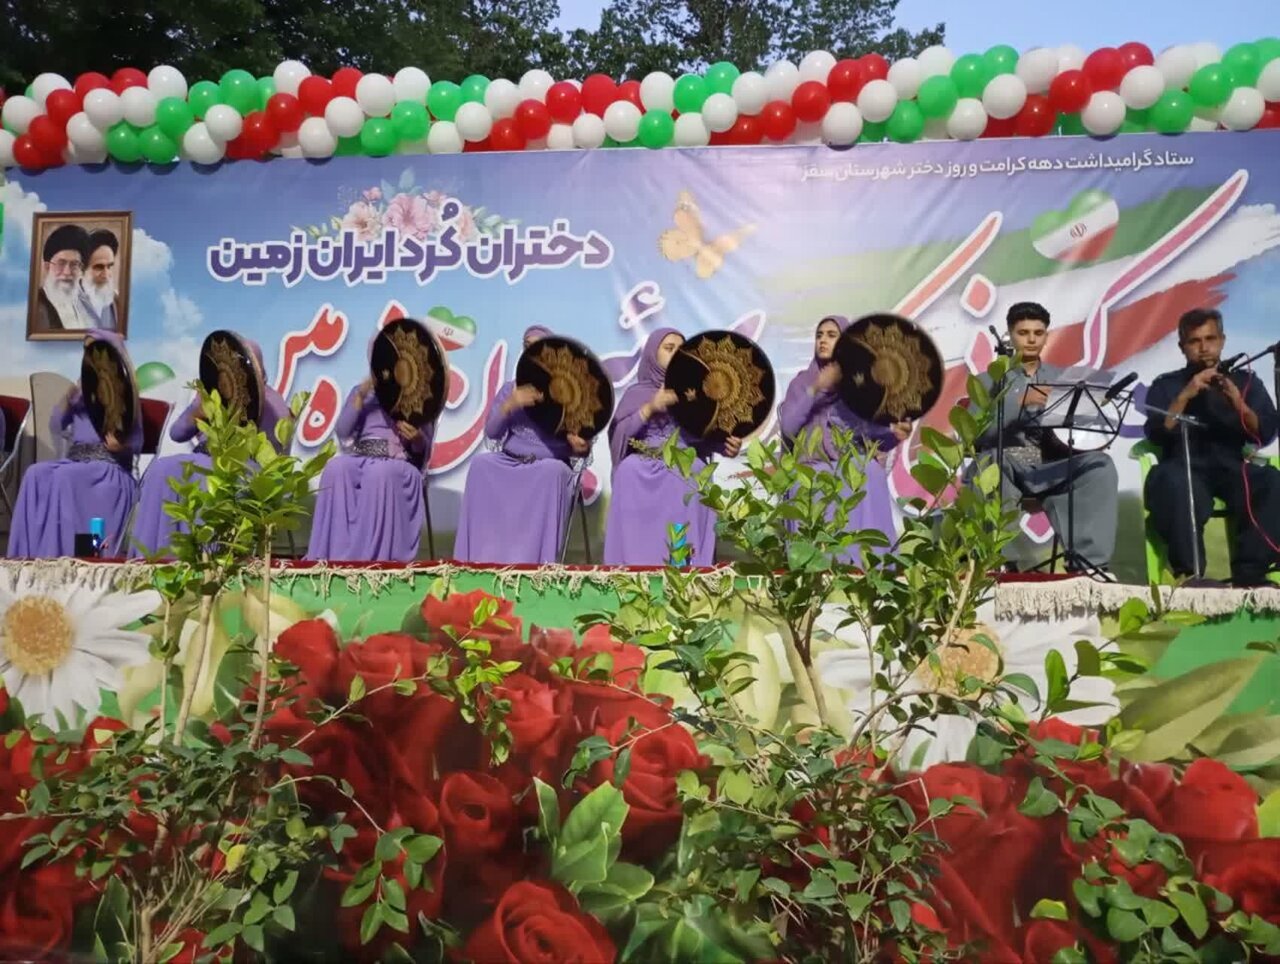 برگزاری جشن بزرگ روز دختر با عنوان «کچانی کوردی ئێرانی» درسقز